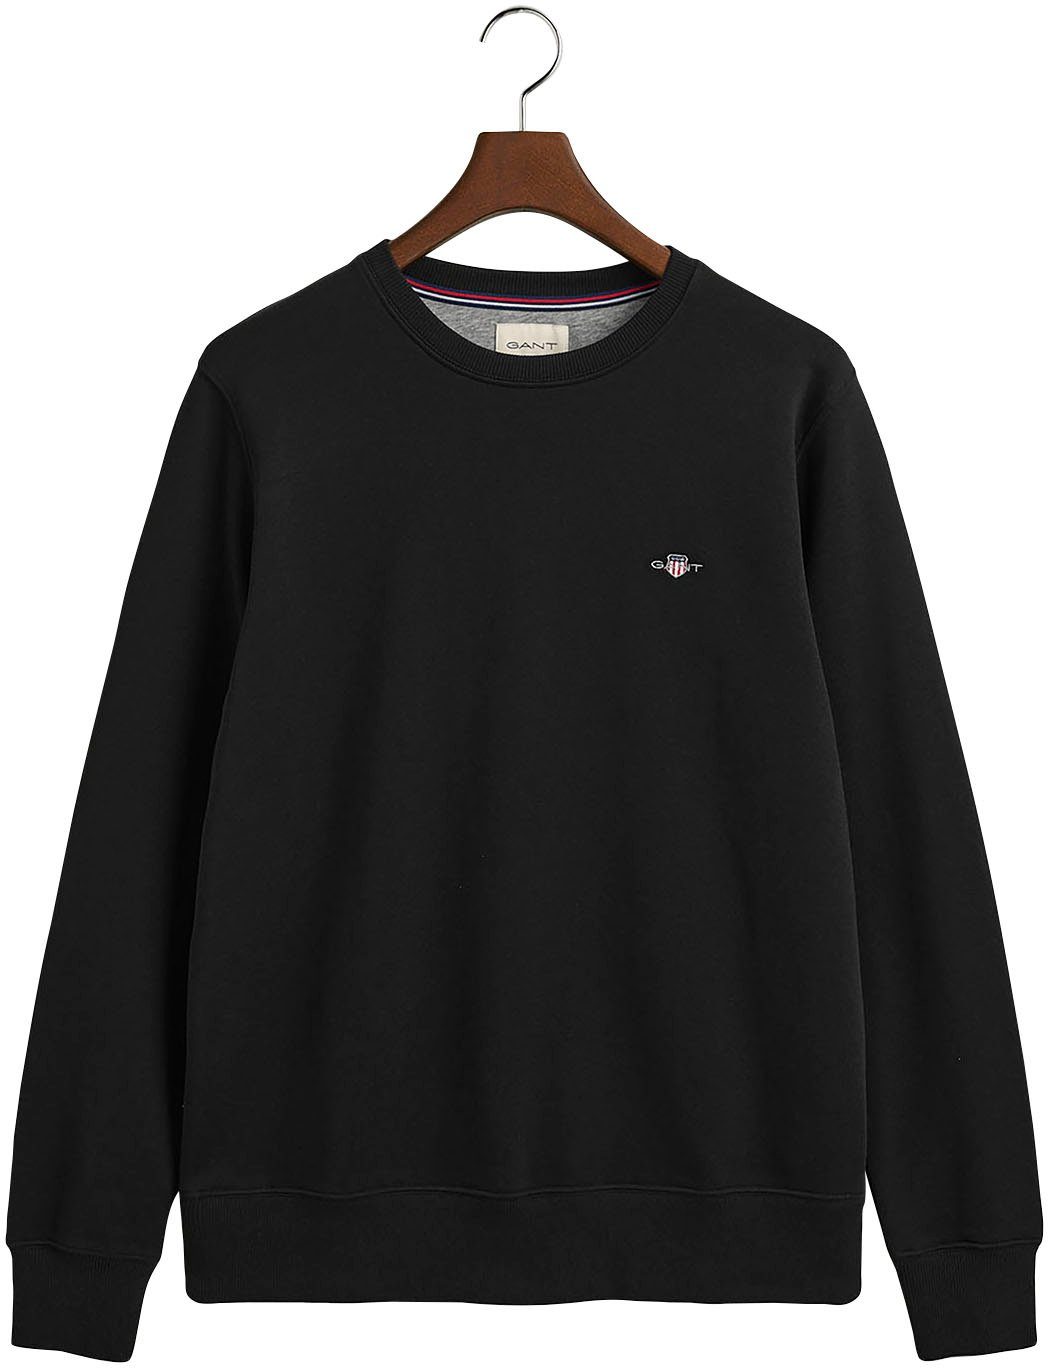 auf Logostickerei Sweatshirt black C-NECK mit Gant SHIELD der REG Brust SWEAT